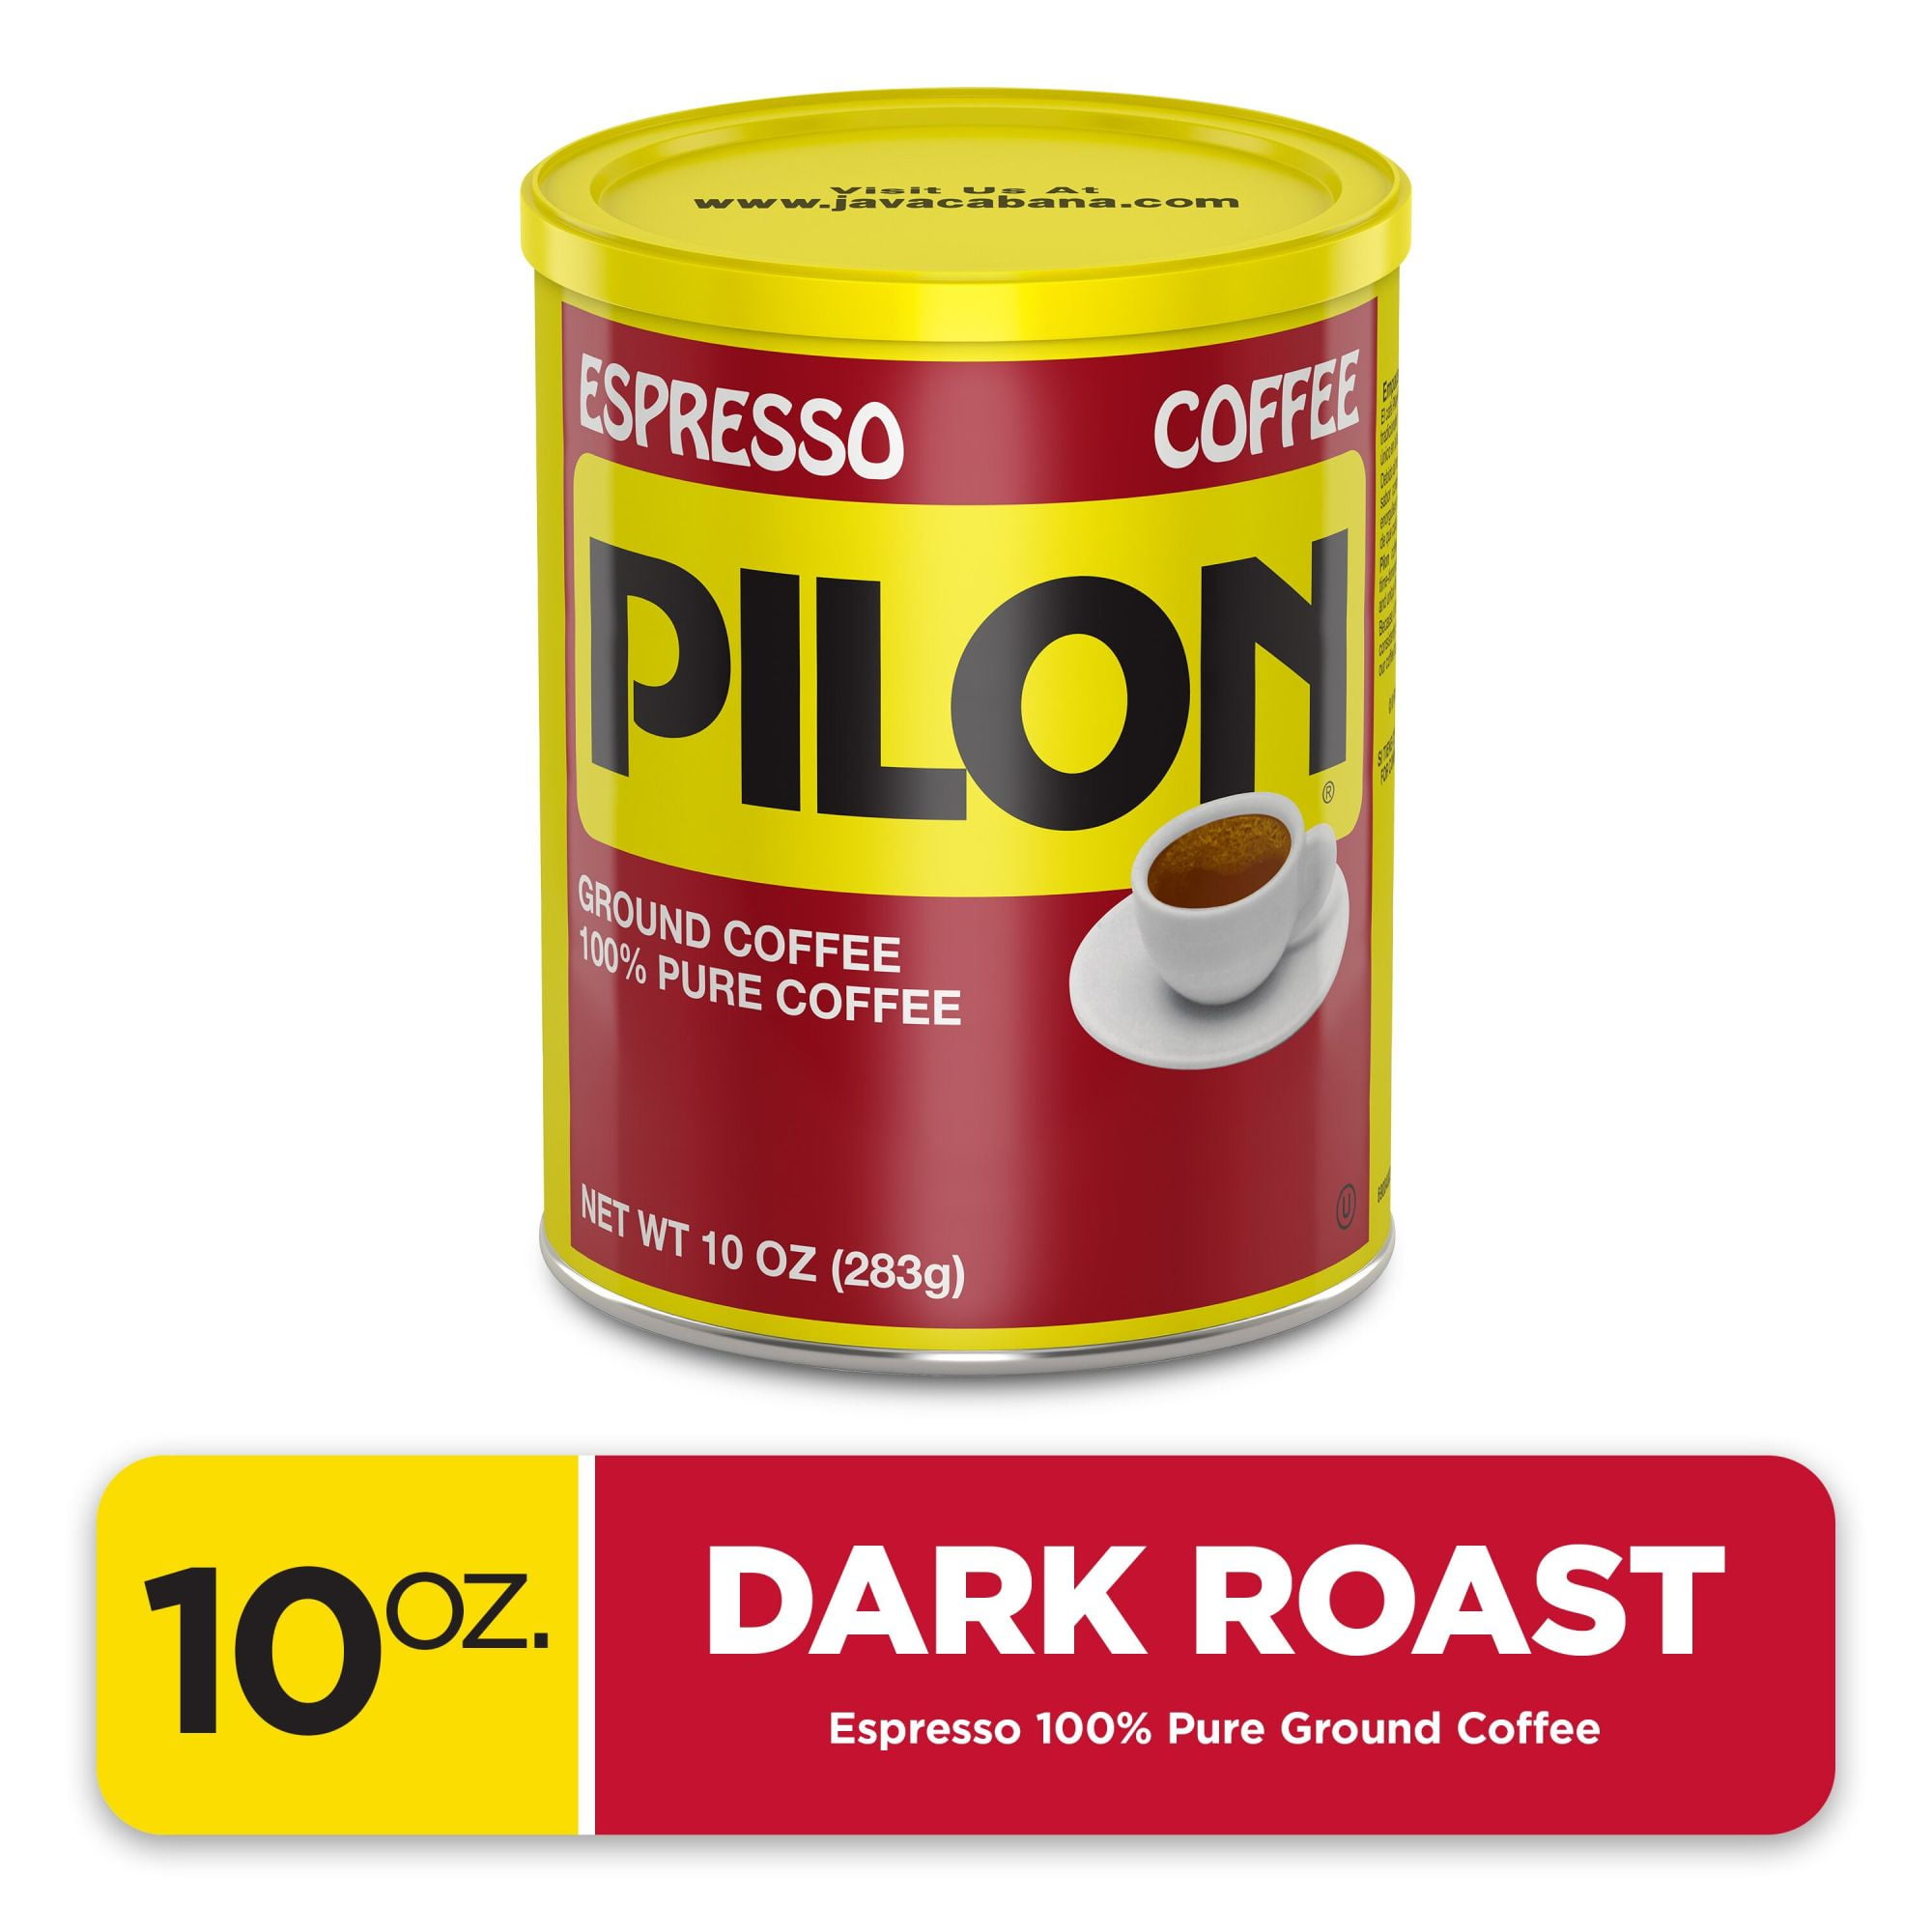 Cafe Pilon Espresso Coffee Family Pack, 4 ct./10 oz.